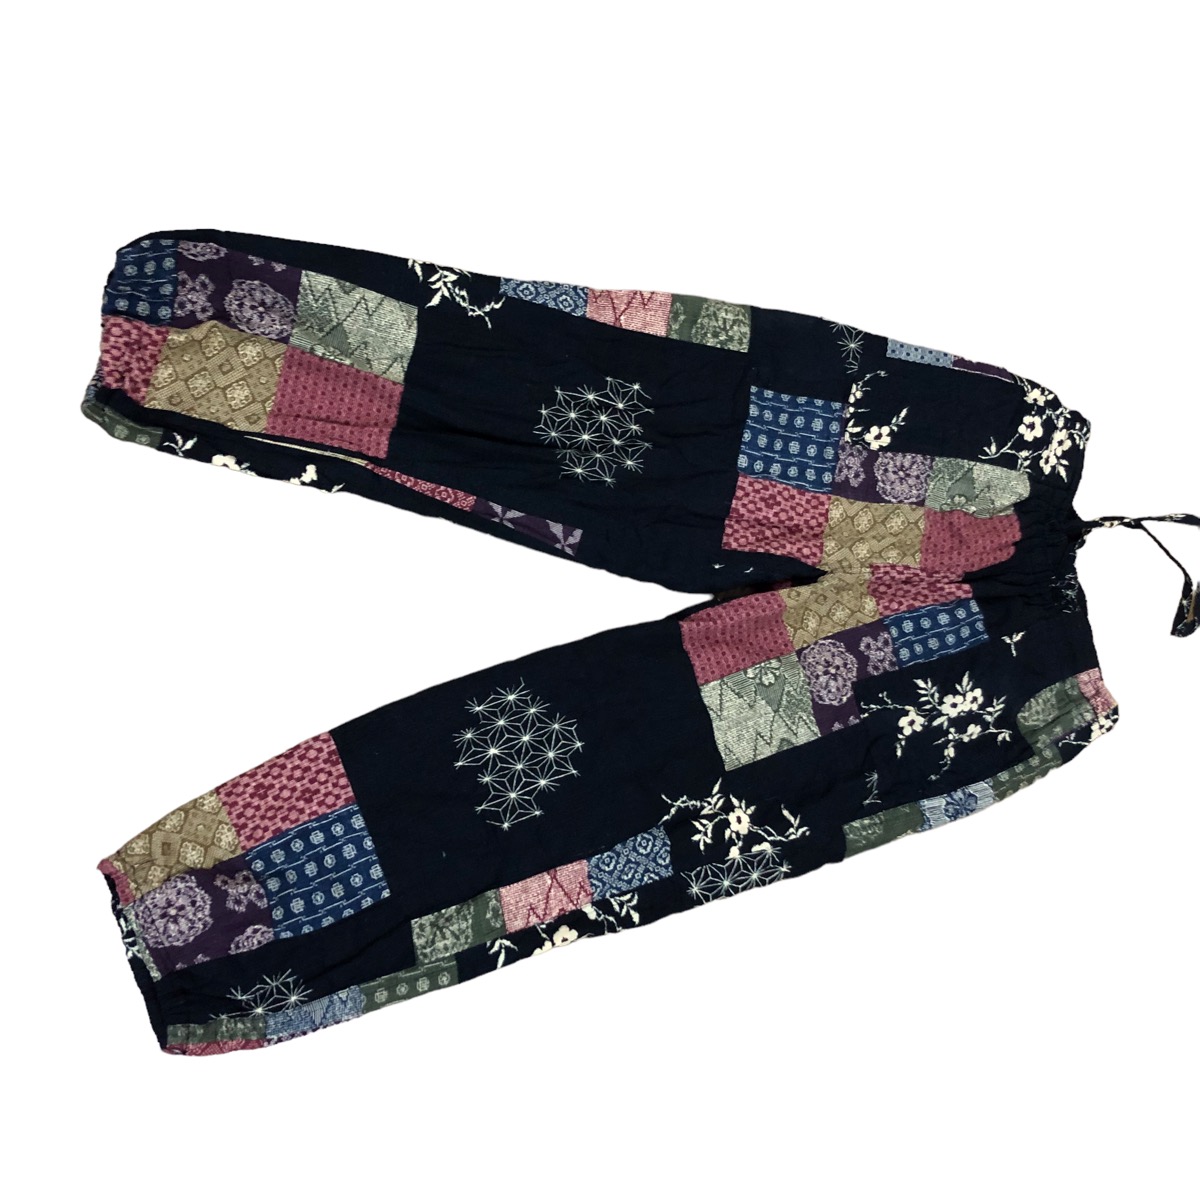 Japanese Brand - Japan unbranded patchwork design fleece pants - 1